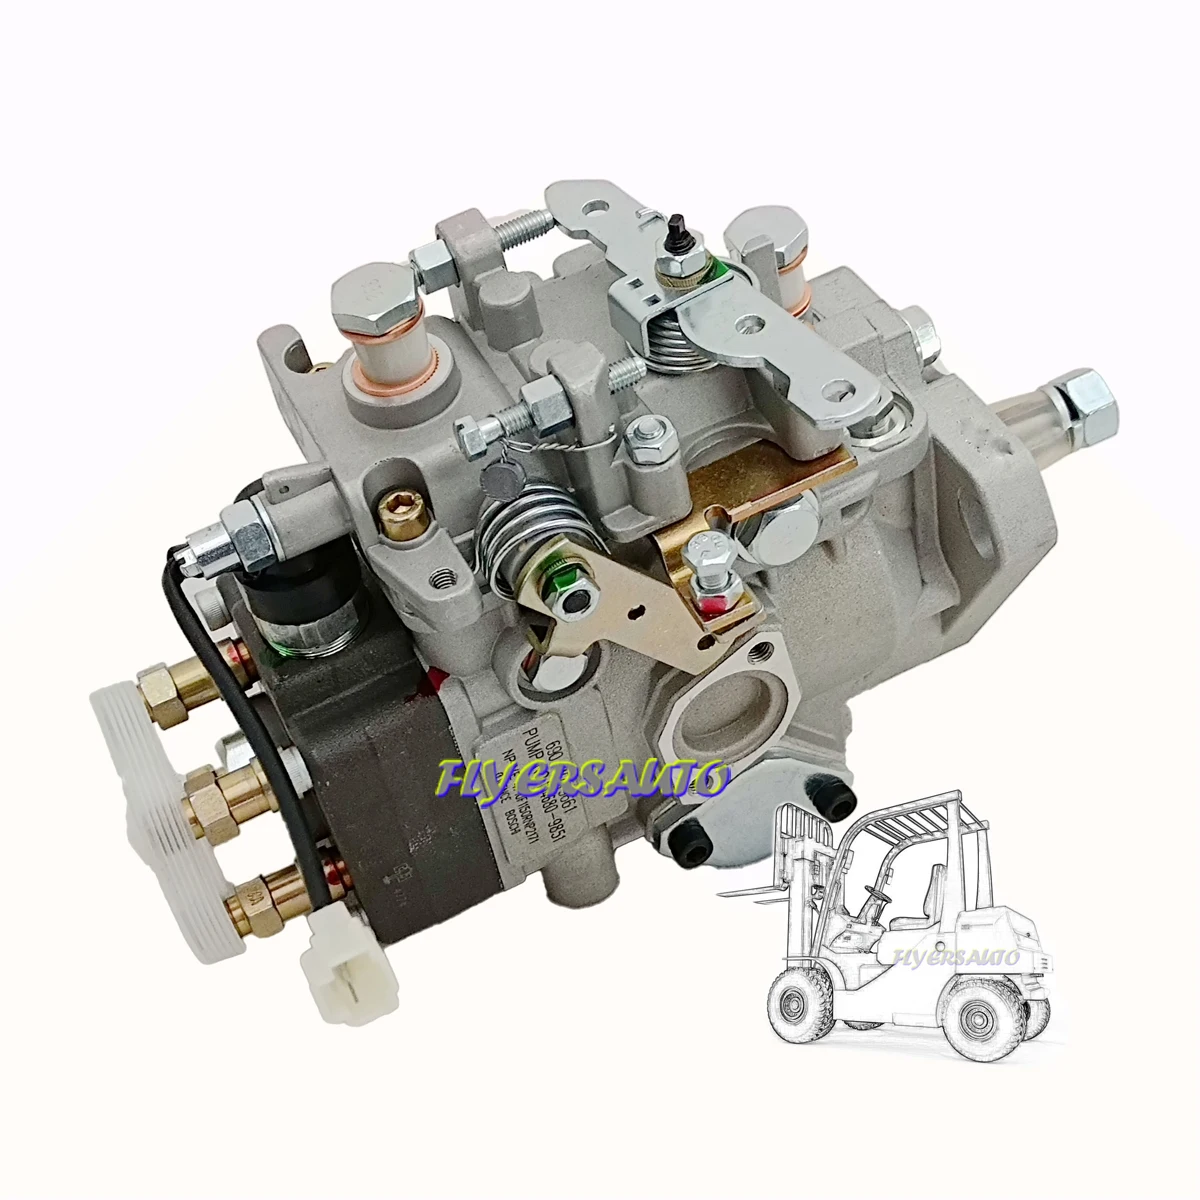 

Diesel high pressure fuel injection pump VE4 10F1150RNP2171 104680-9851 104780-9180 FOR TCM FORKLIFT NISSAN PICKUP TD27 ENGINE